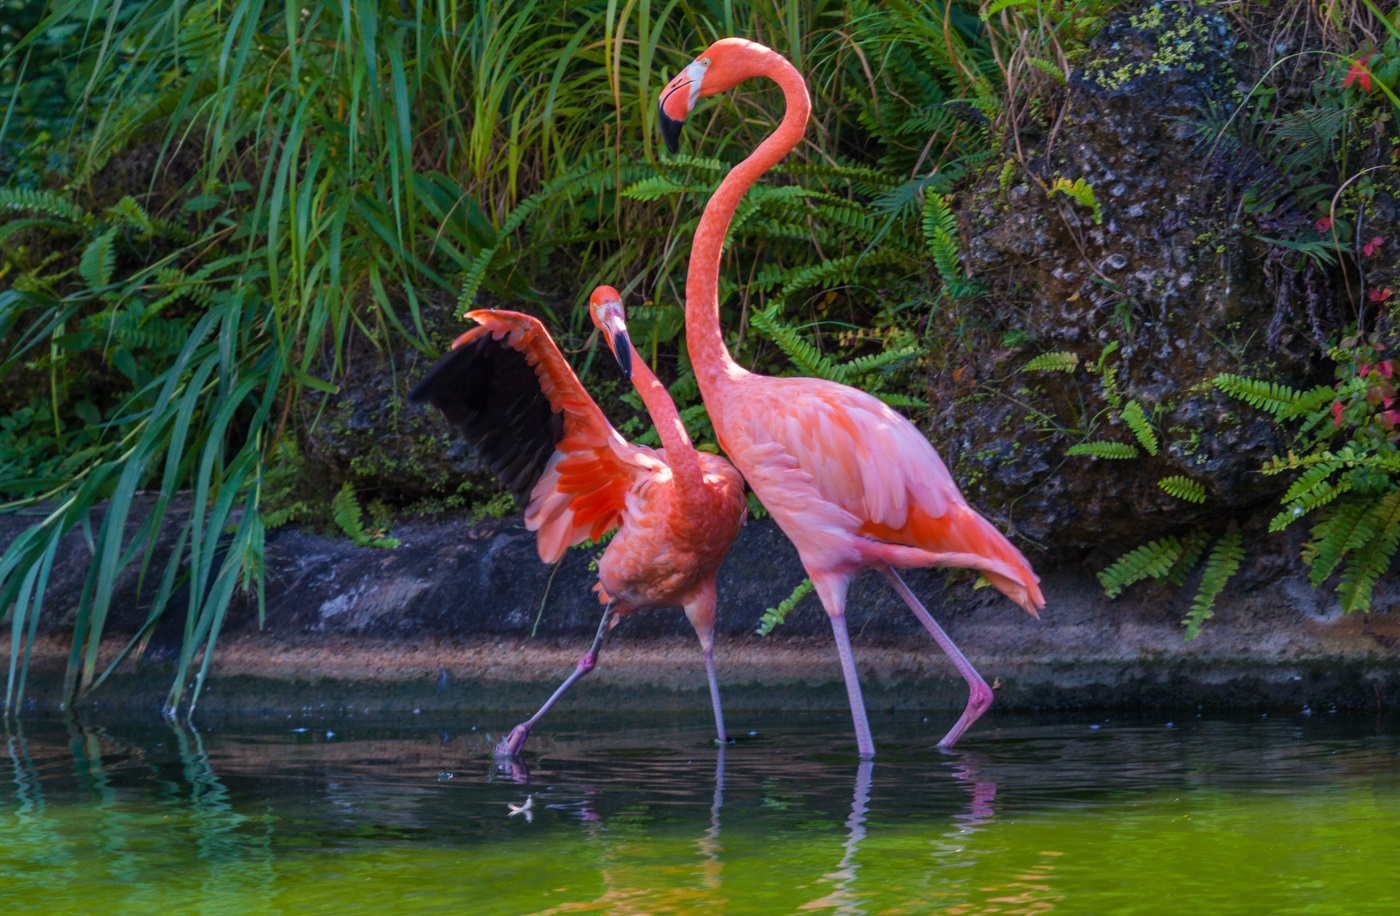 Rožinis flamingas